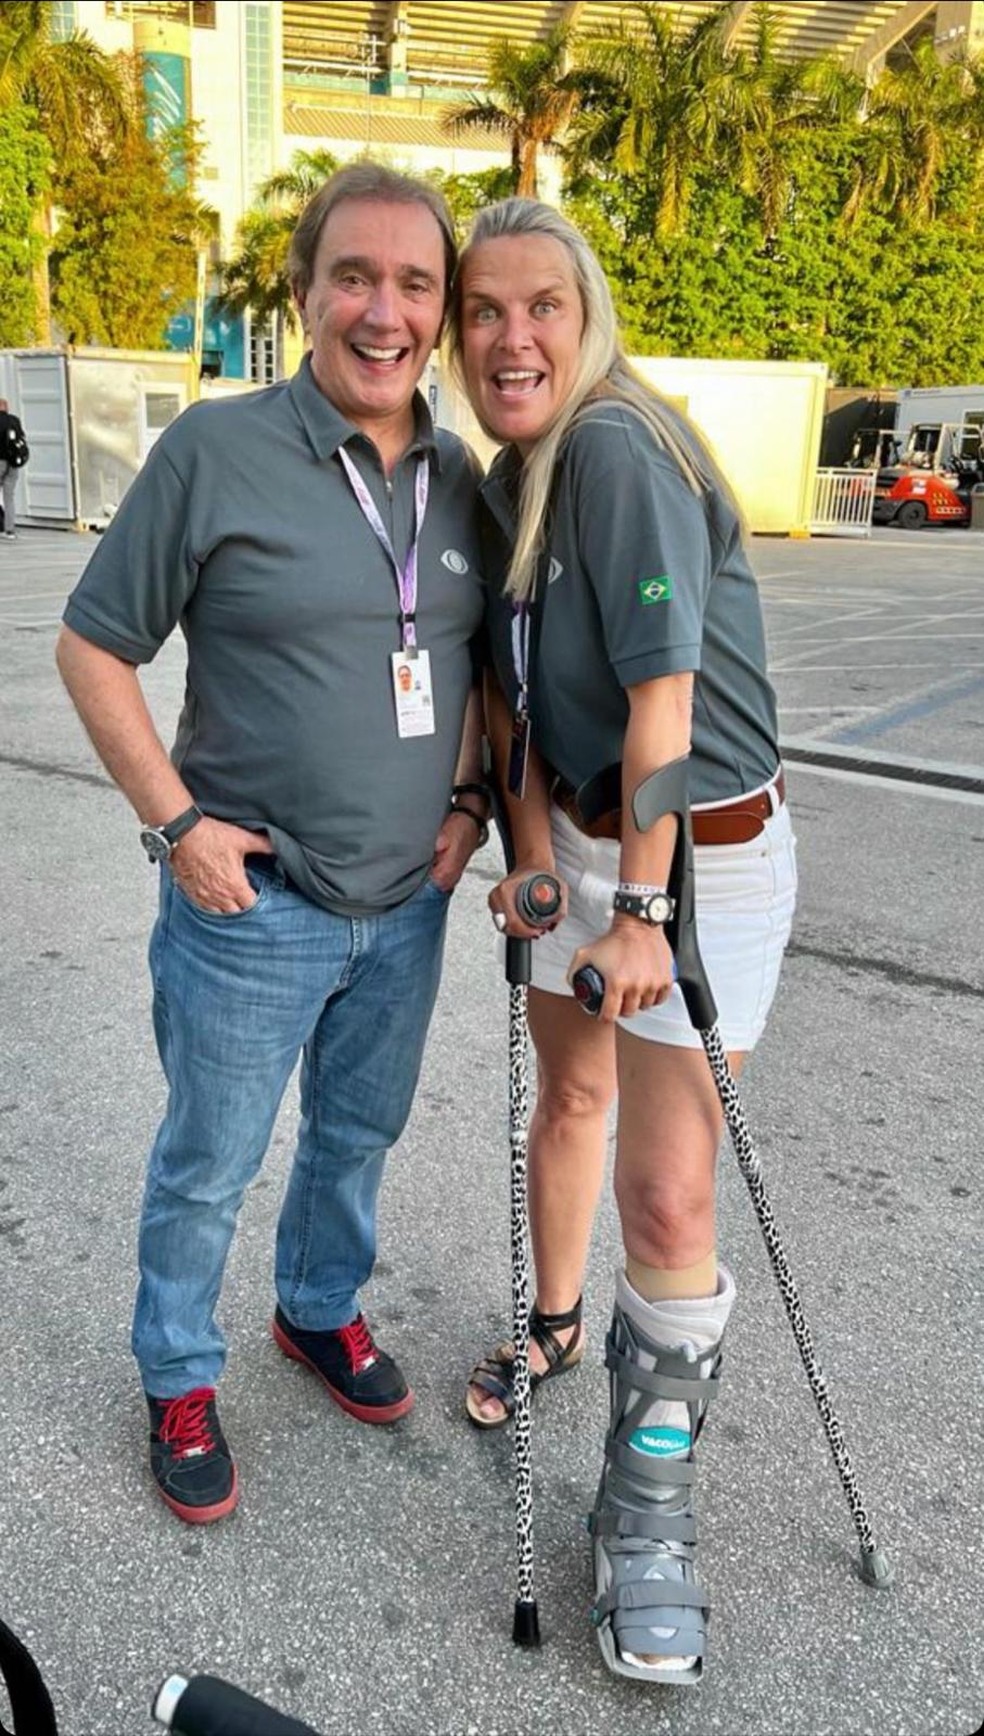 De muletas e com pé imobilizado, Mariana Becker registra encontro com o comentarista Reginaldo Leme nos bastidores do GP de Miami, nos Estados Unidos, em 2022 — Foto: Arquivo pessoal